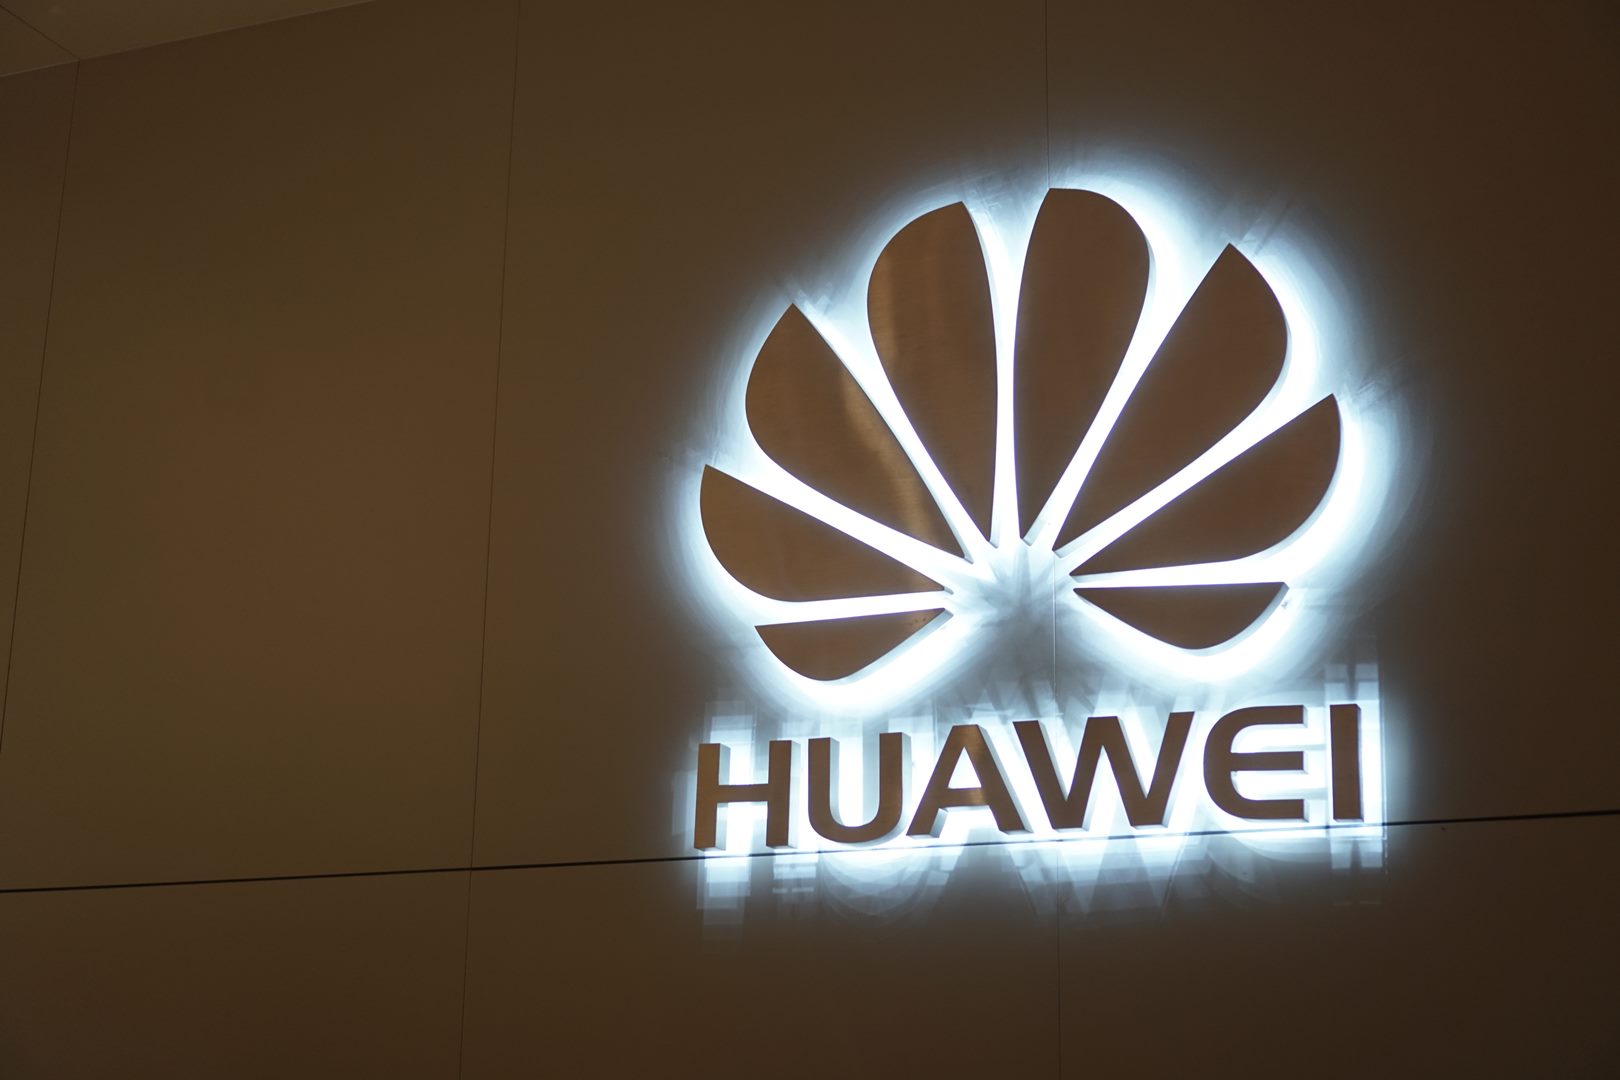 แบไต๋บุกรัง Huawei ถึงถิ่นกำเนิดในจีน ล้วงแนวคิดปัญญาประดิษฐ์